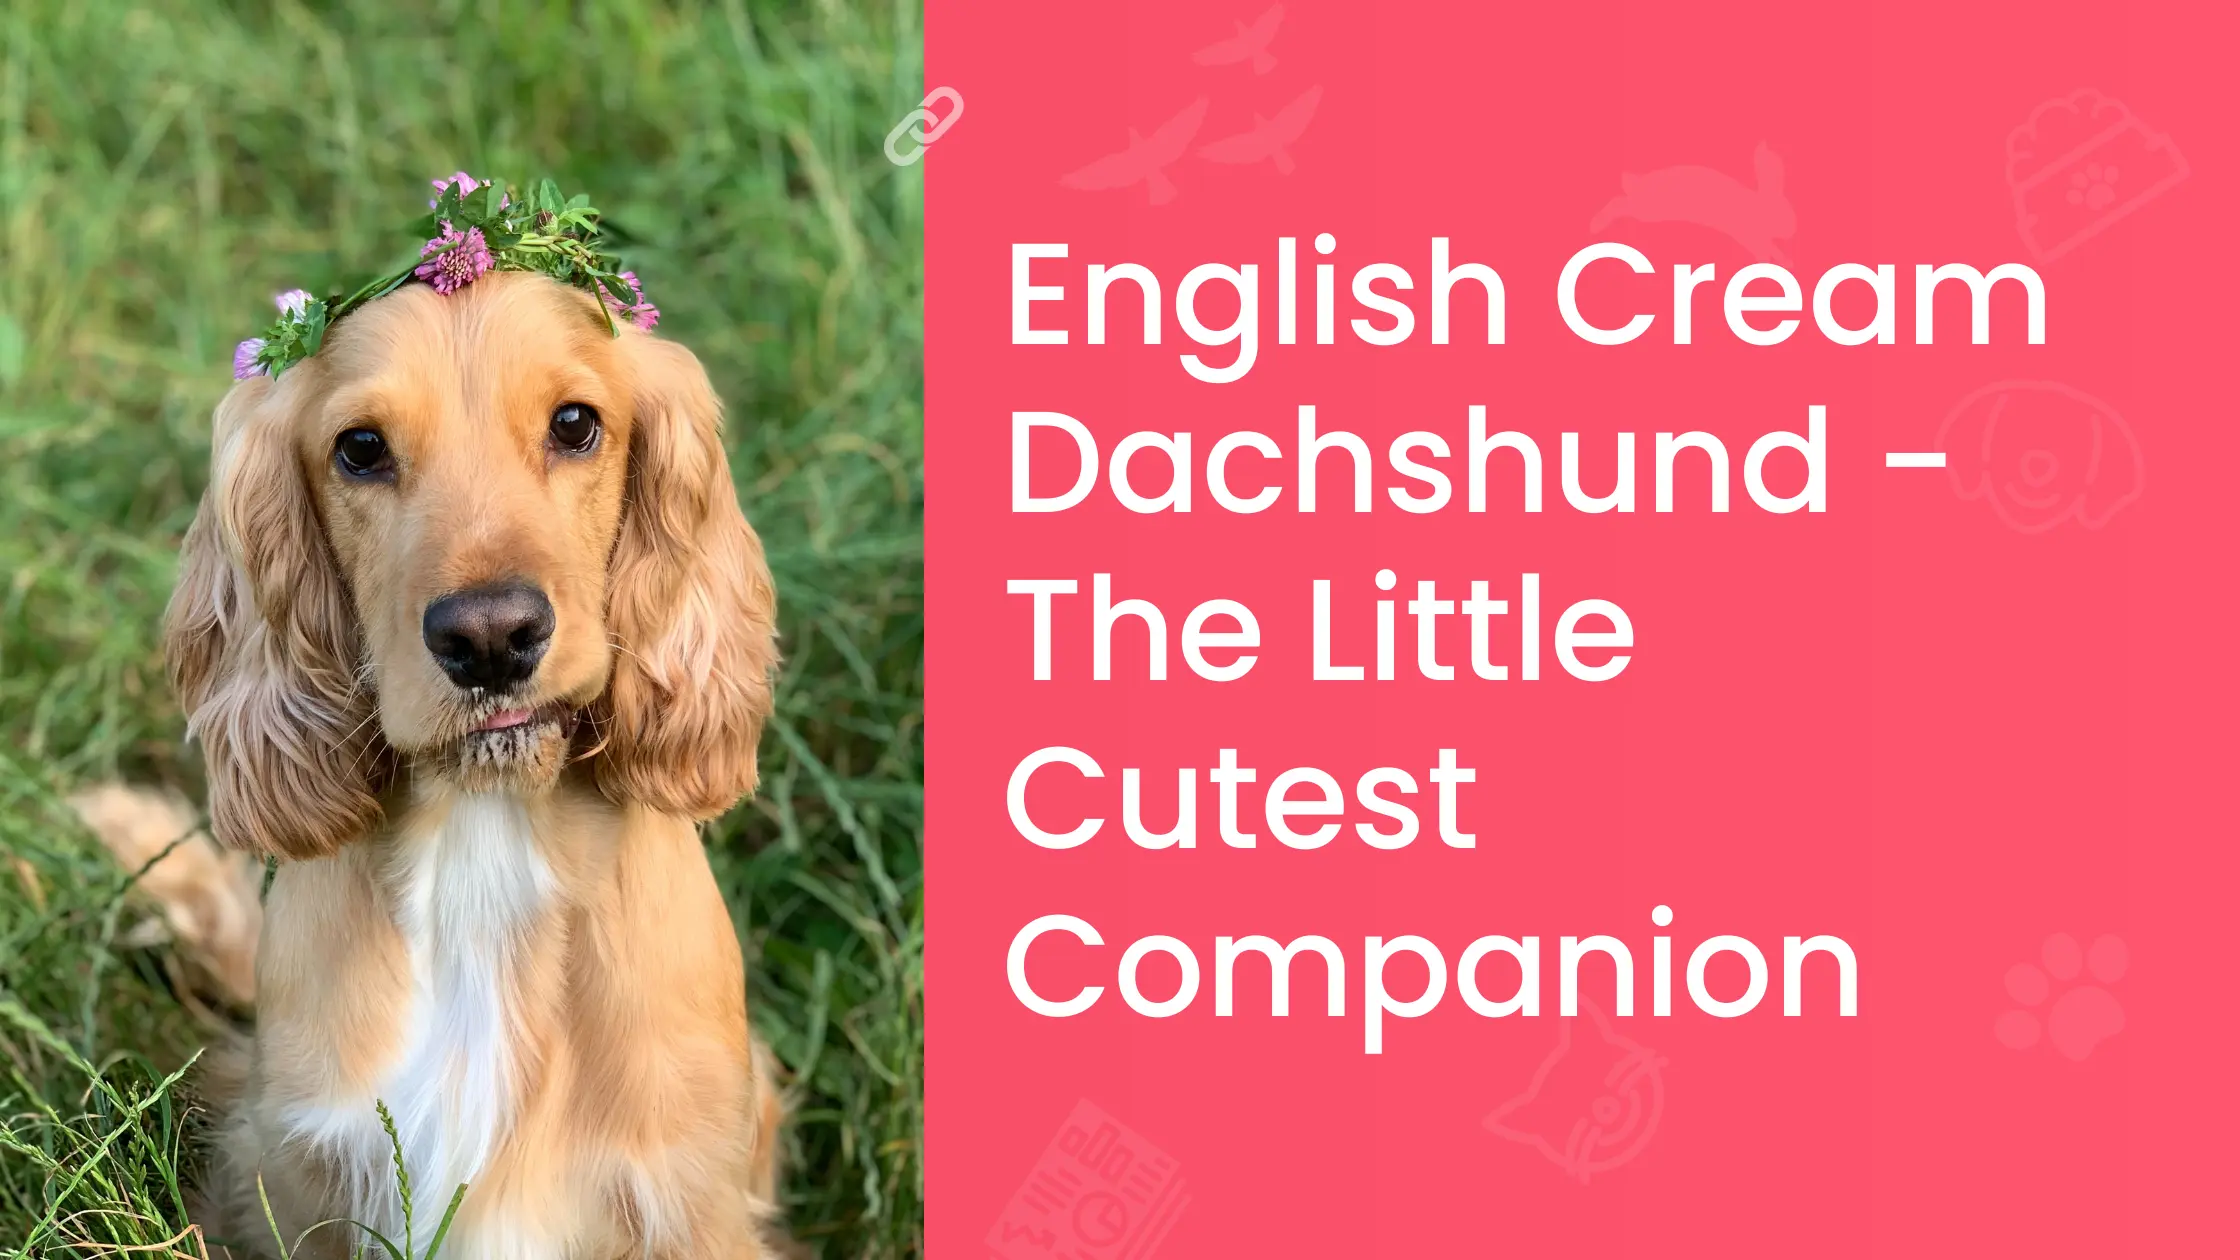 English Cream Dachshund - The Little Cutest Companion